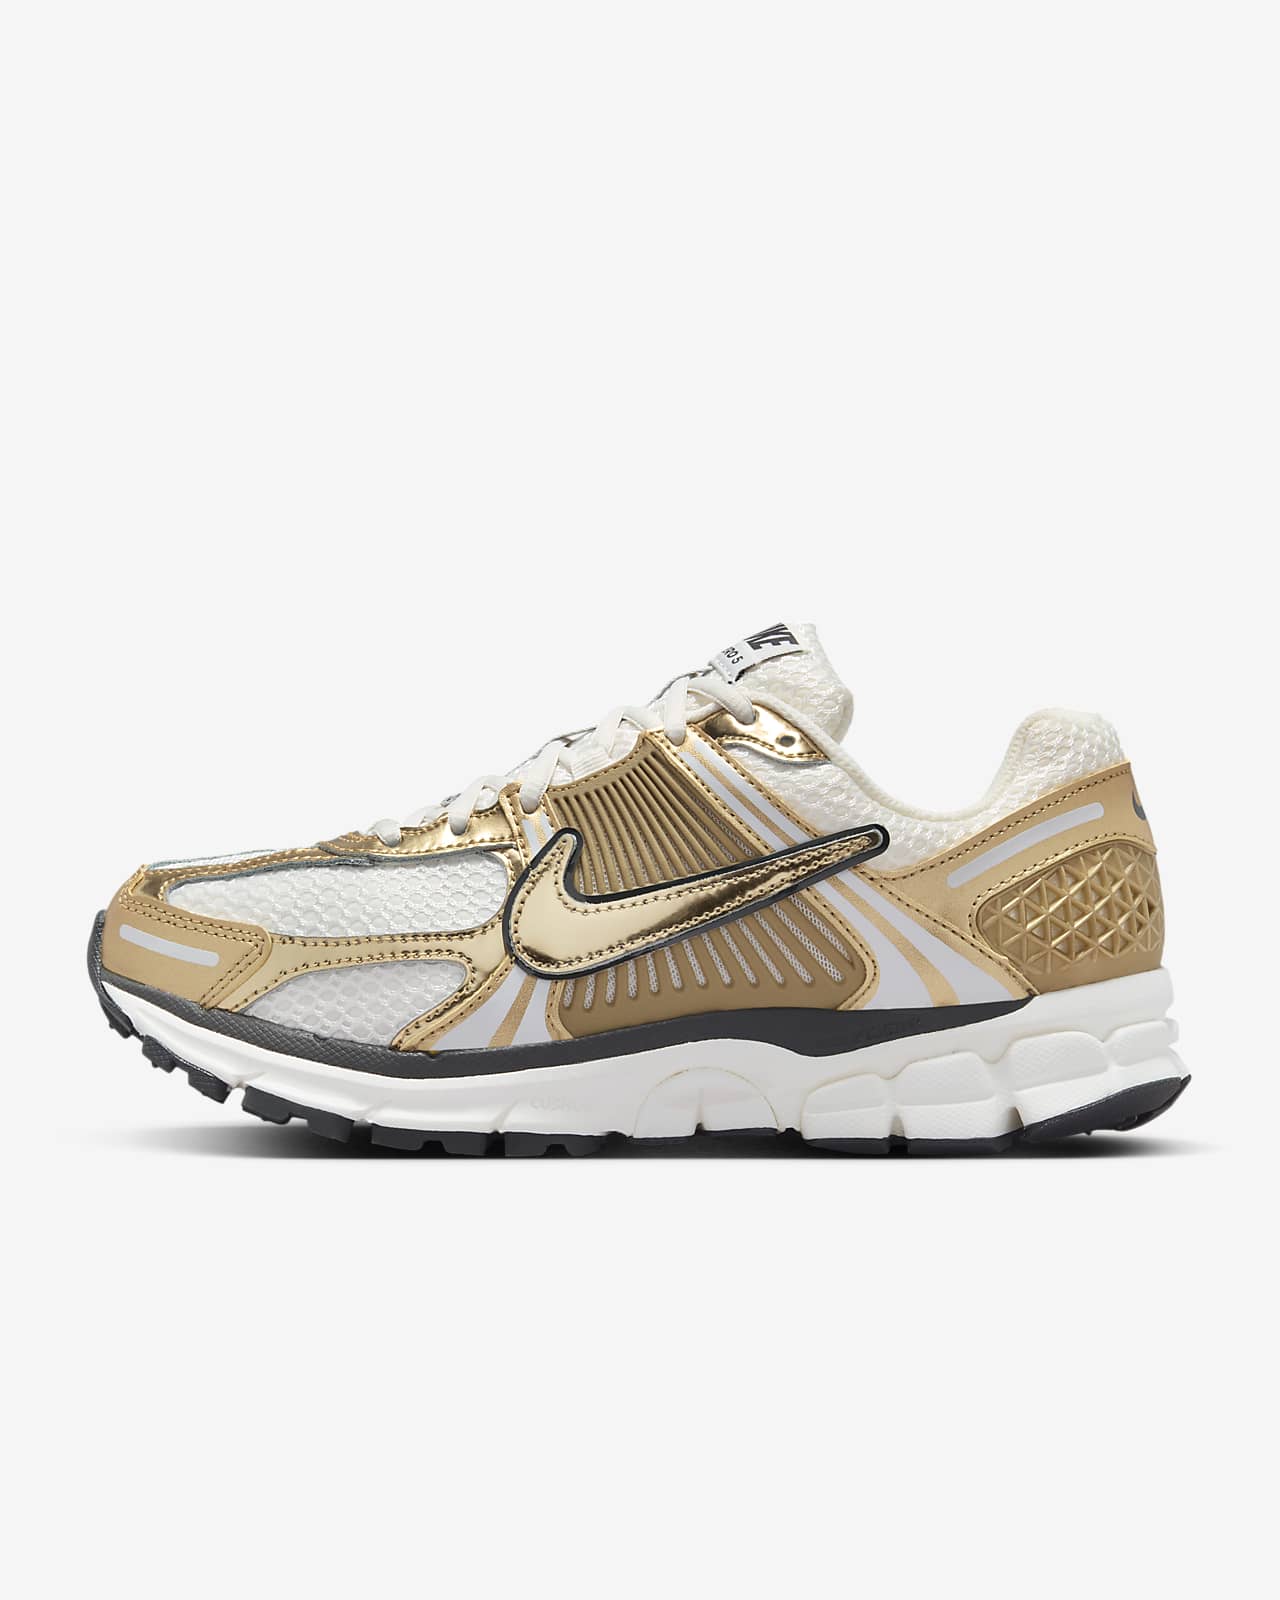 Nike Zoom Vomero 5 Gold Kadın Ayakkabısı